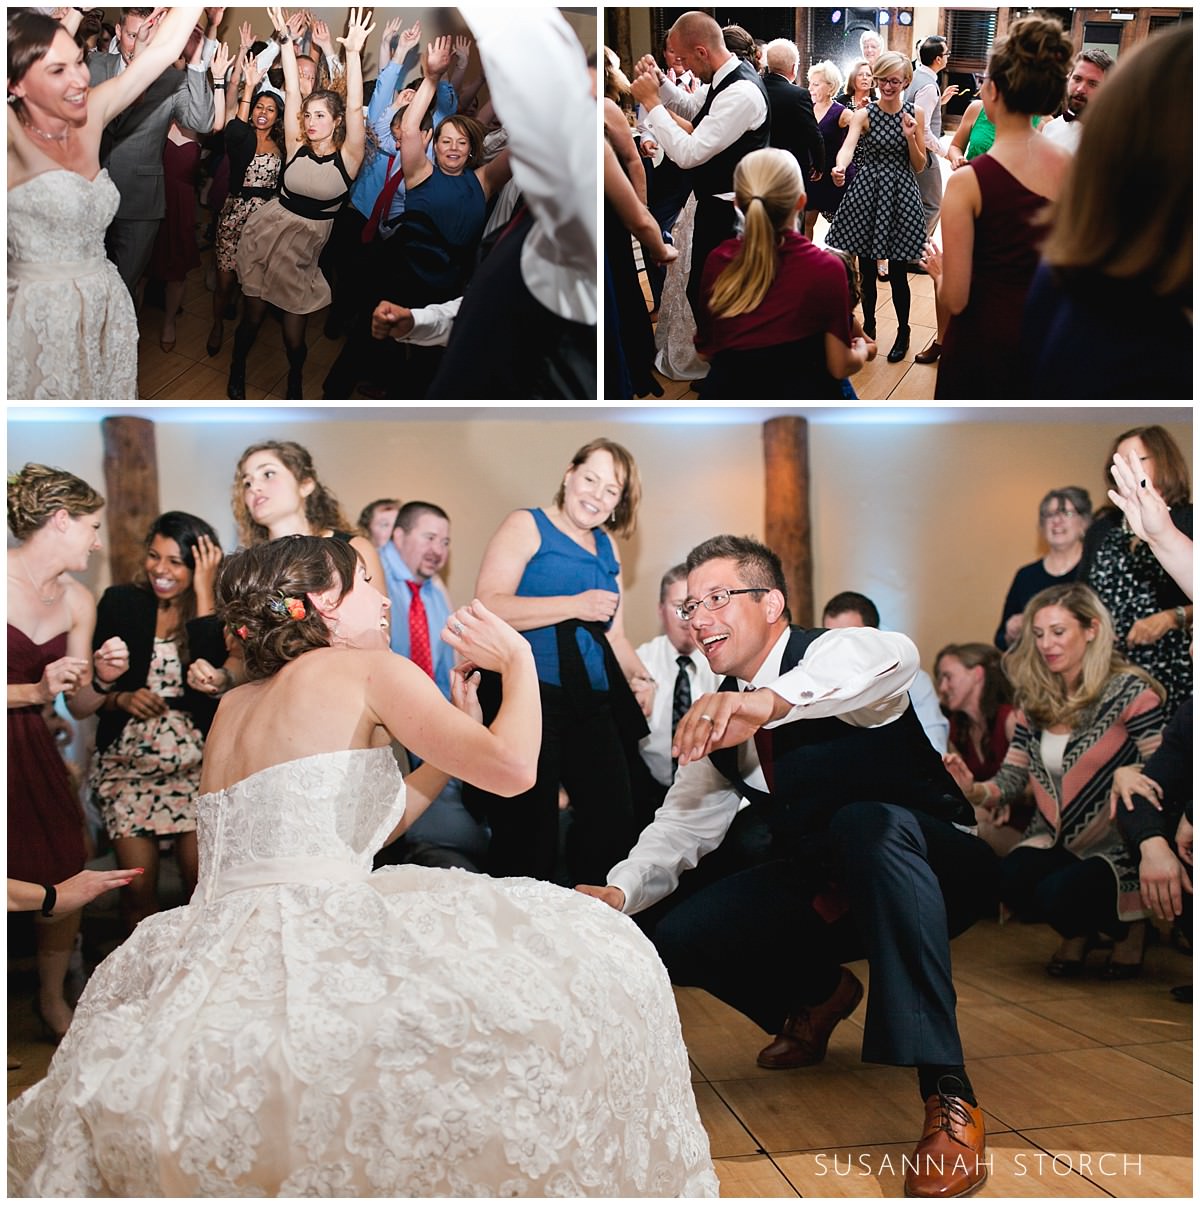 three photos of happy wedding guests dancing